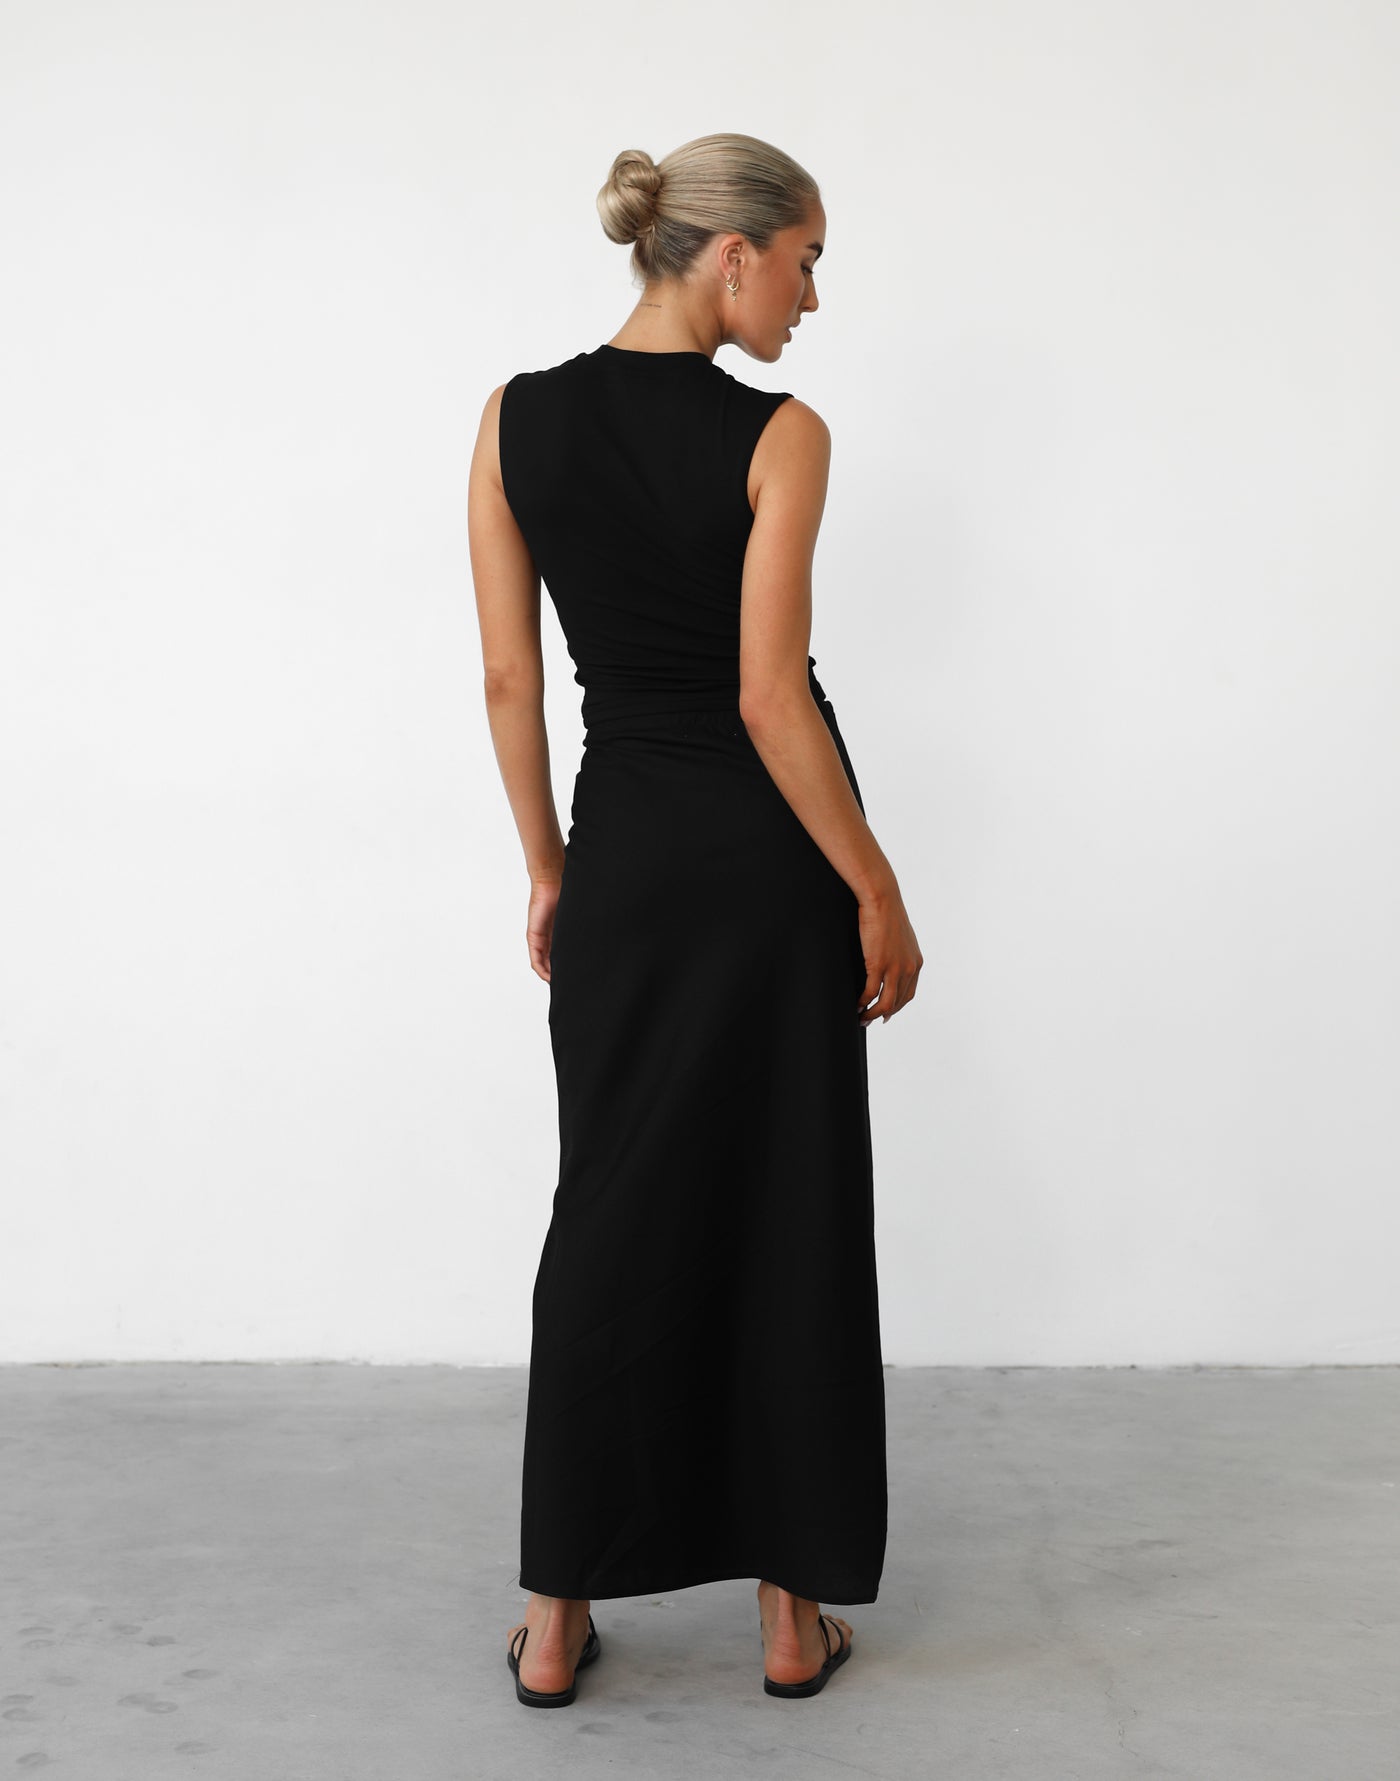 Darna Maxi Skirt (Black) - Adjustable Waist Linen Maxi Skirt - Women's Skirt - Charcoal Clothing